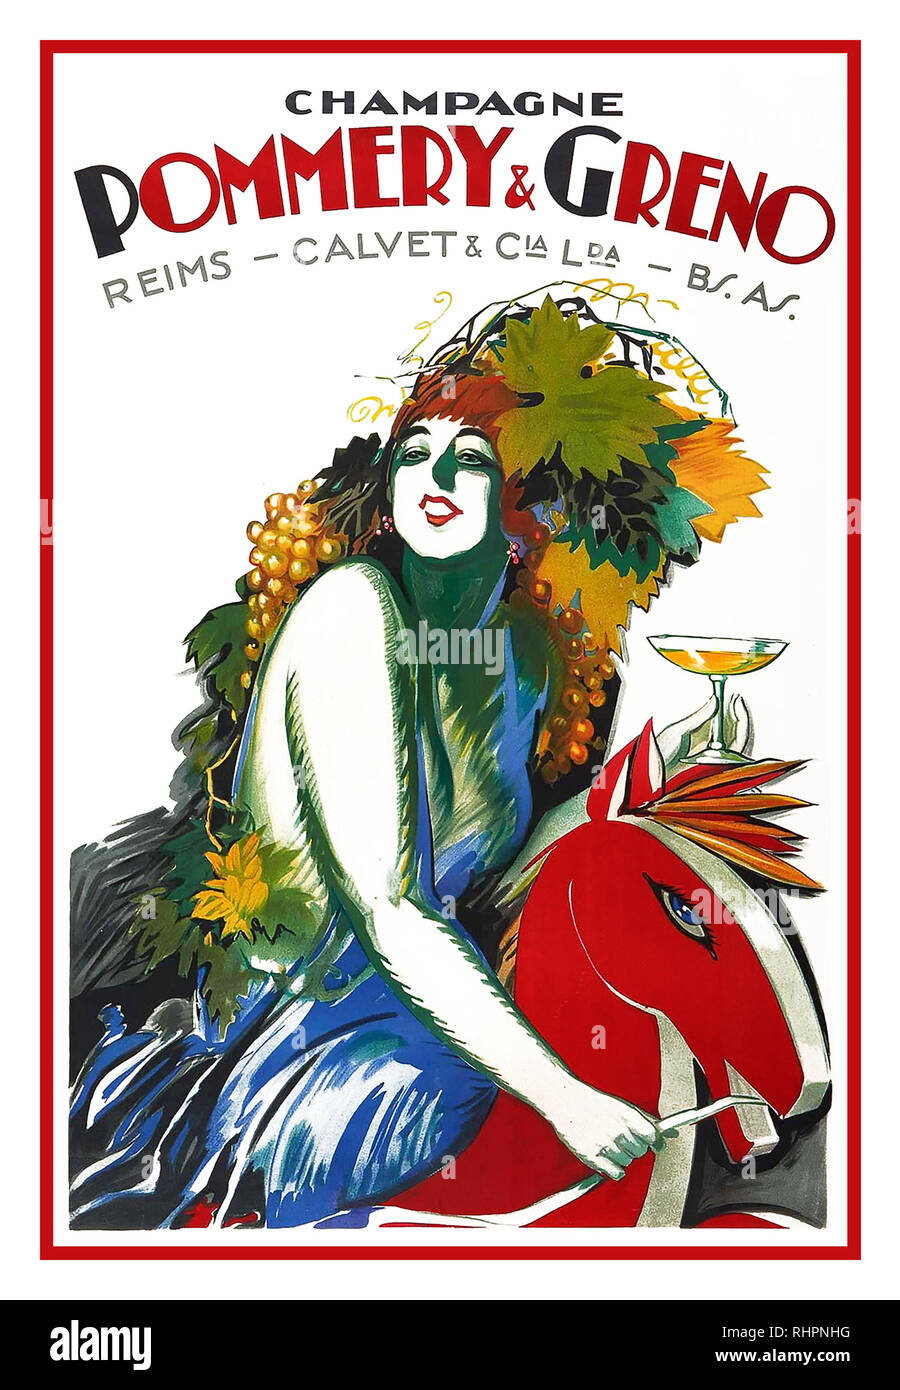 Vintage Art Deco französischer Champagner Champagner Pommery & Greno Poster Poster Design und Artwork von Achille LUCIANO MAUZAN Lithographie 1925 Stockfoto